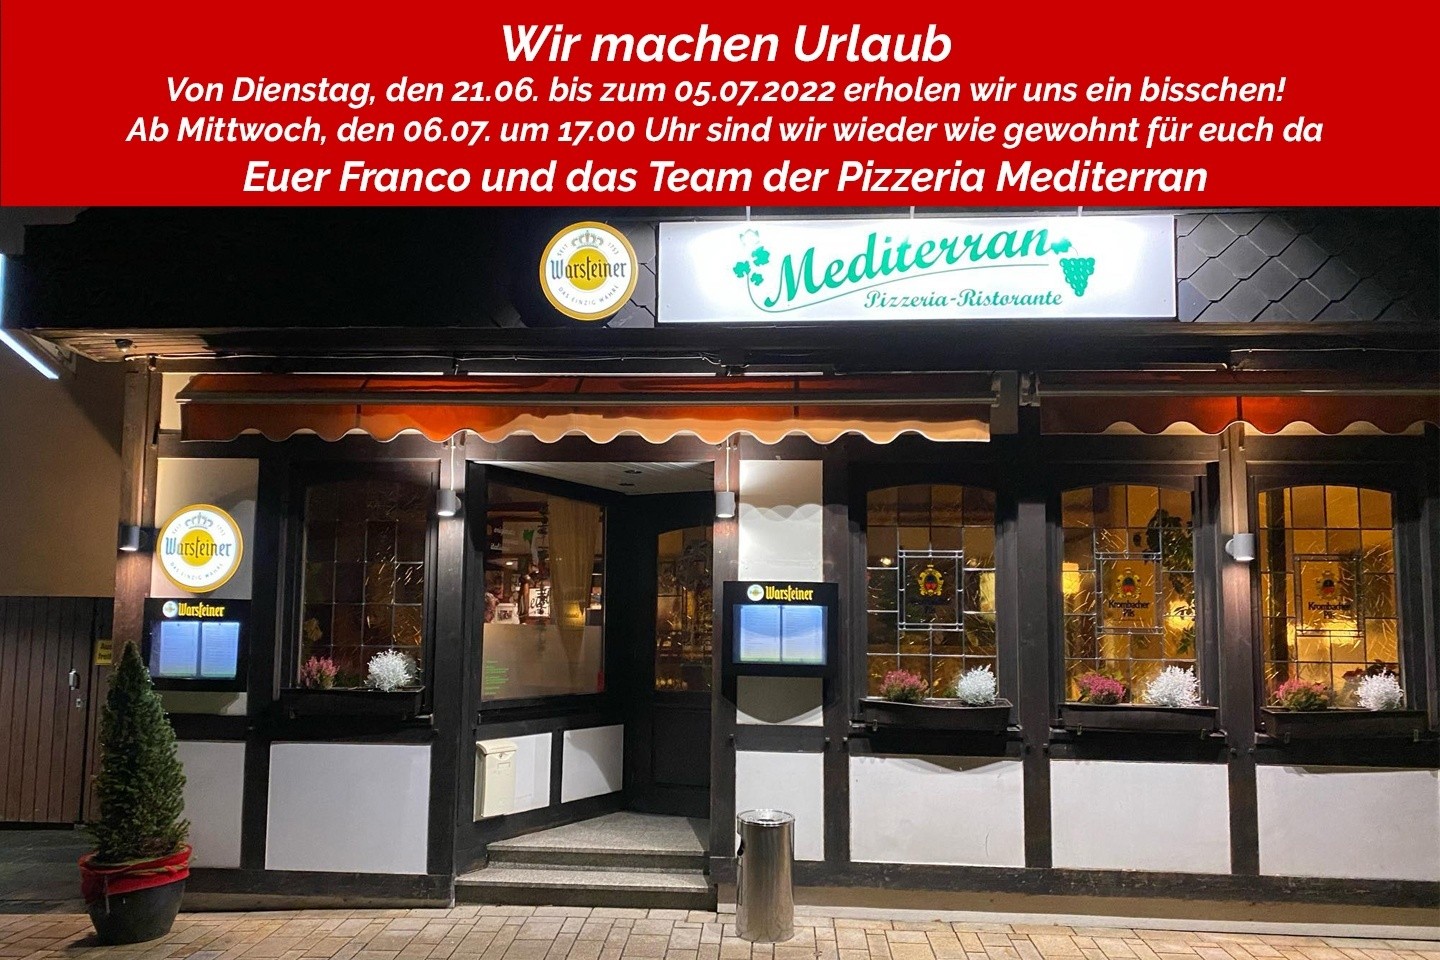 Pizzeria Mediterran bei Franco: Urlaub von Dienstag, den 21.06. - Dienstag, den 05.07.2022